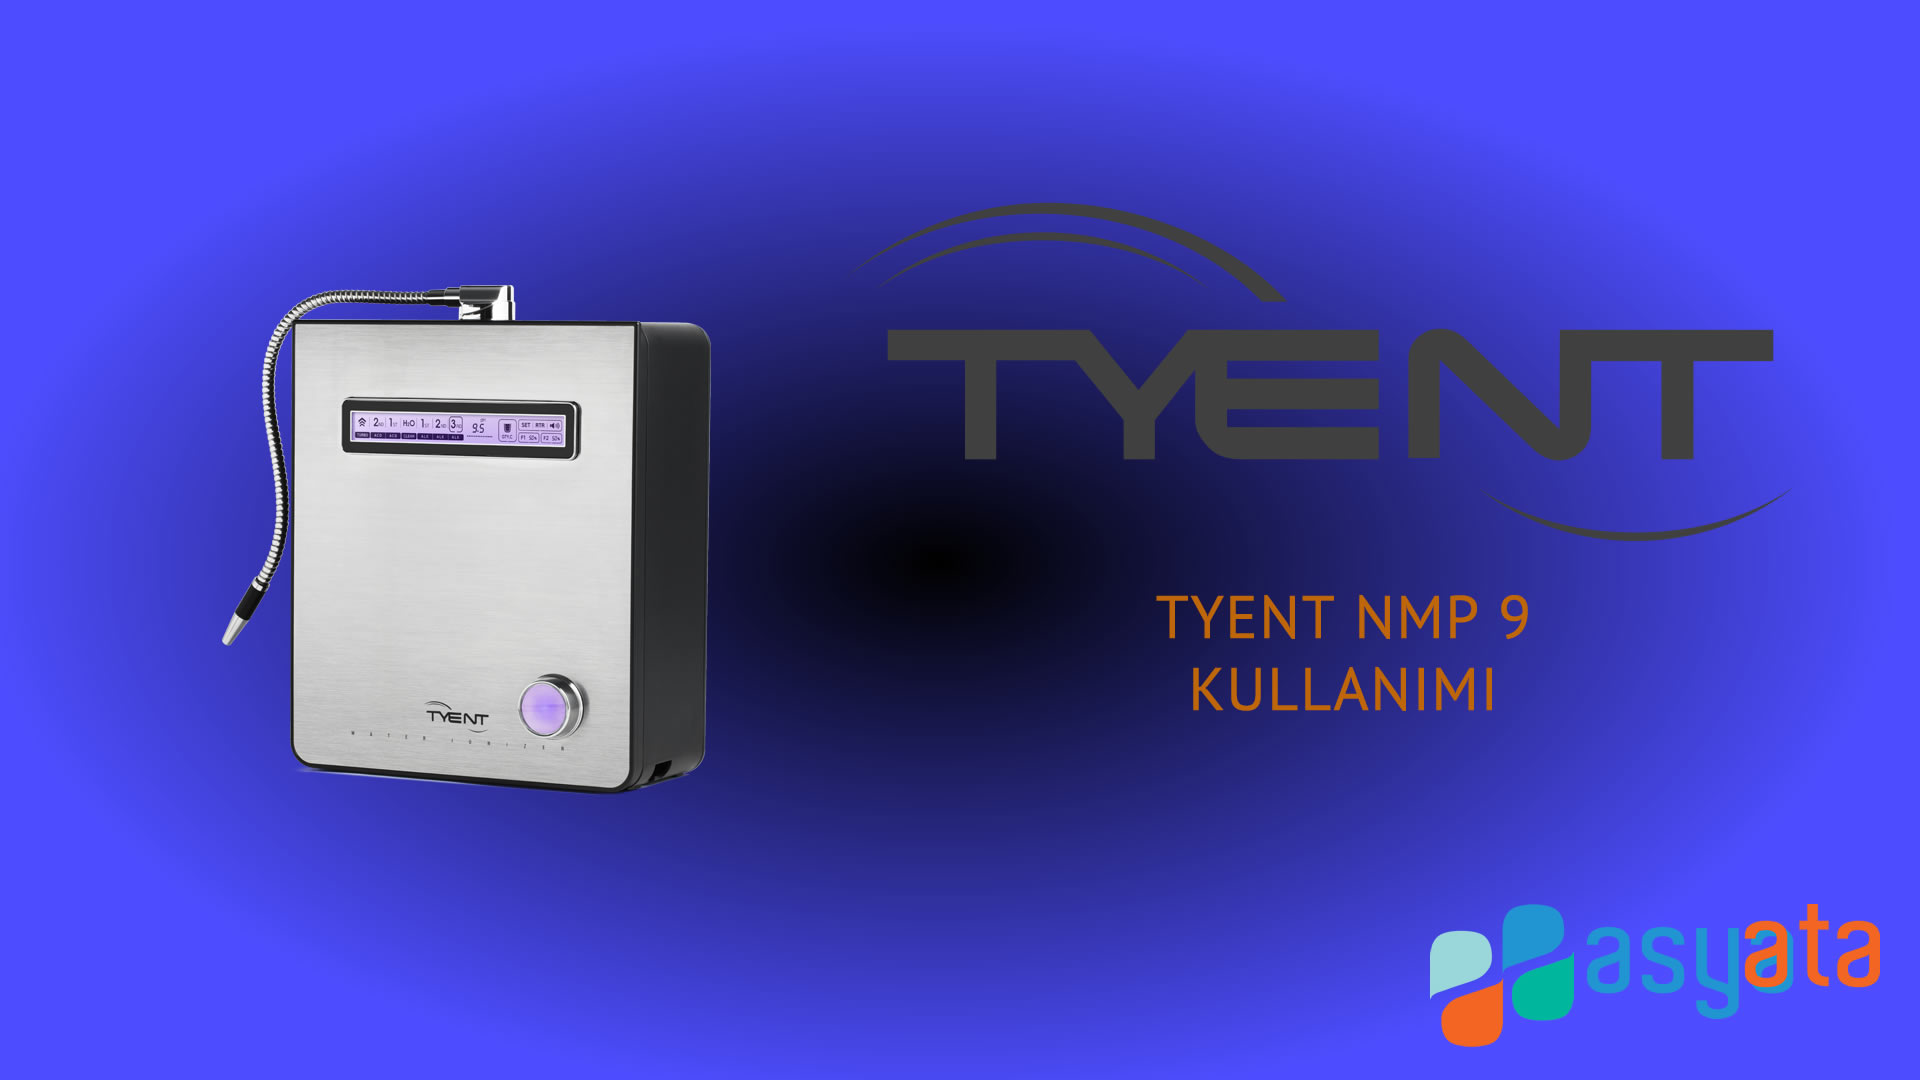 TYENT NMP 9 Modeli Kullanımı